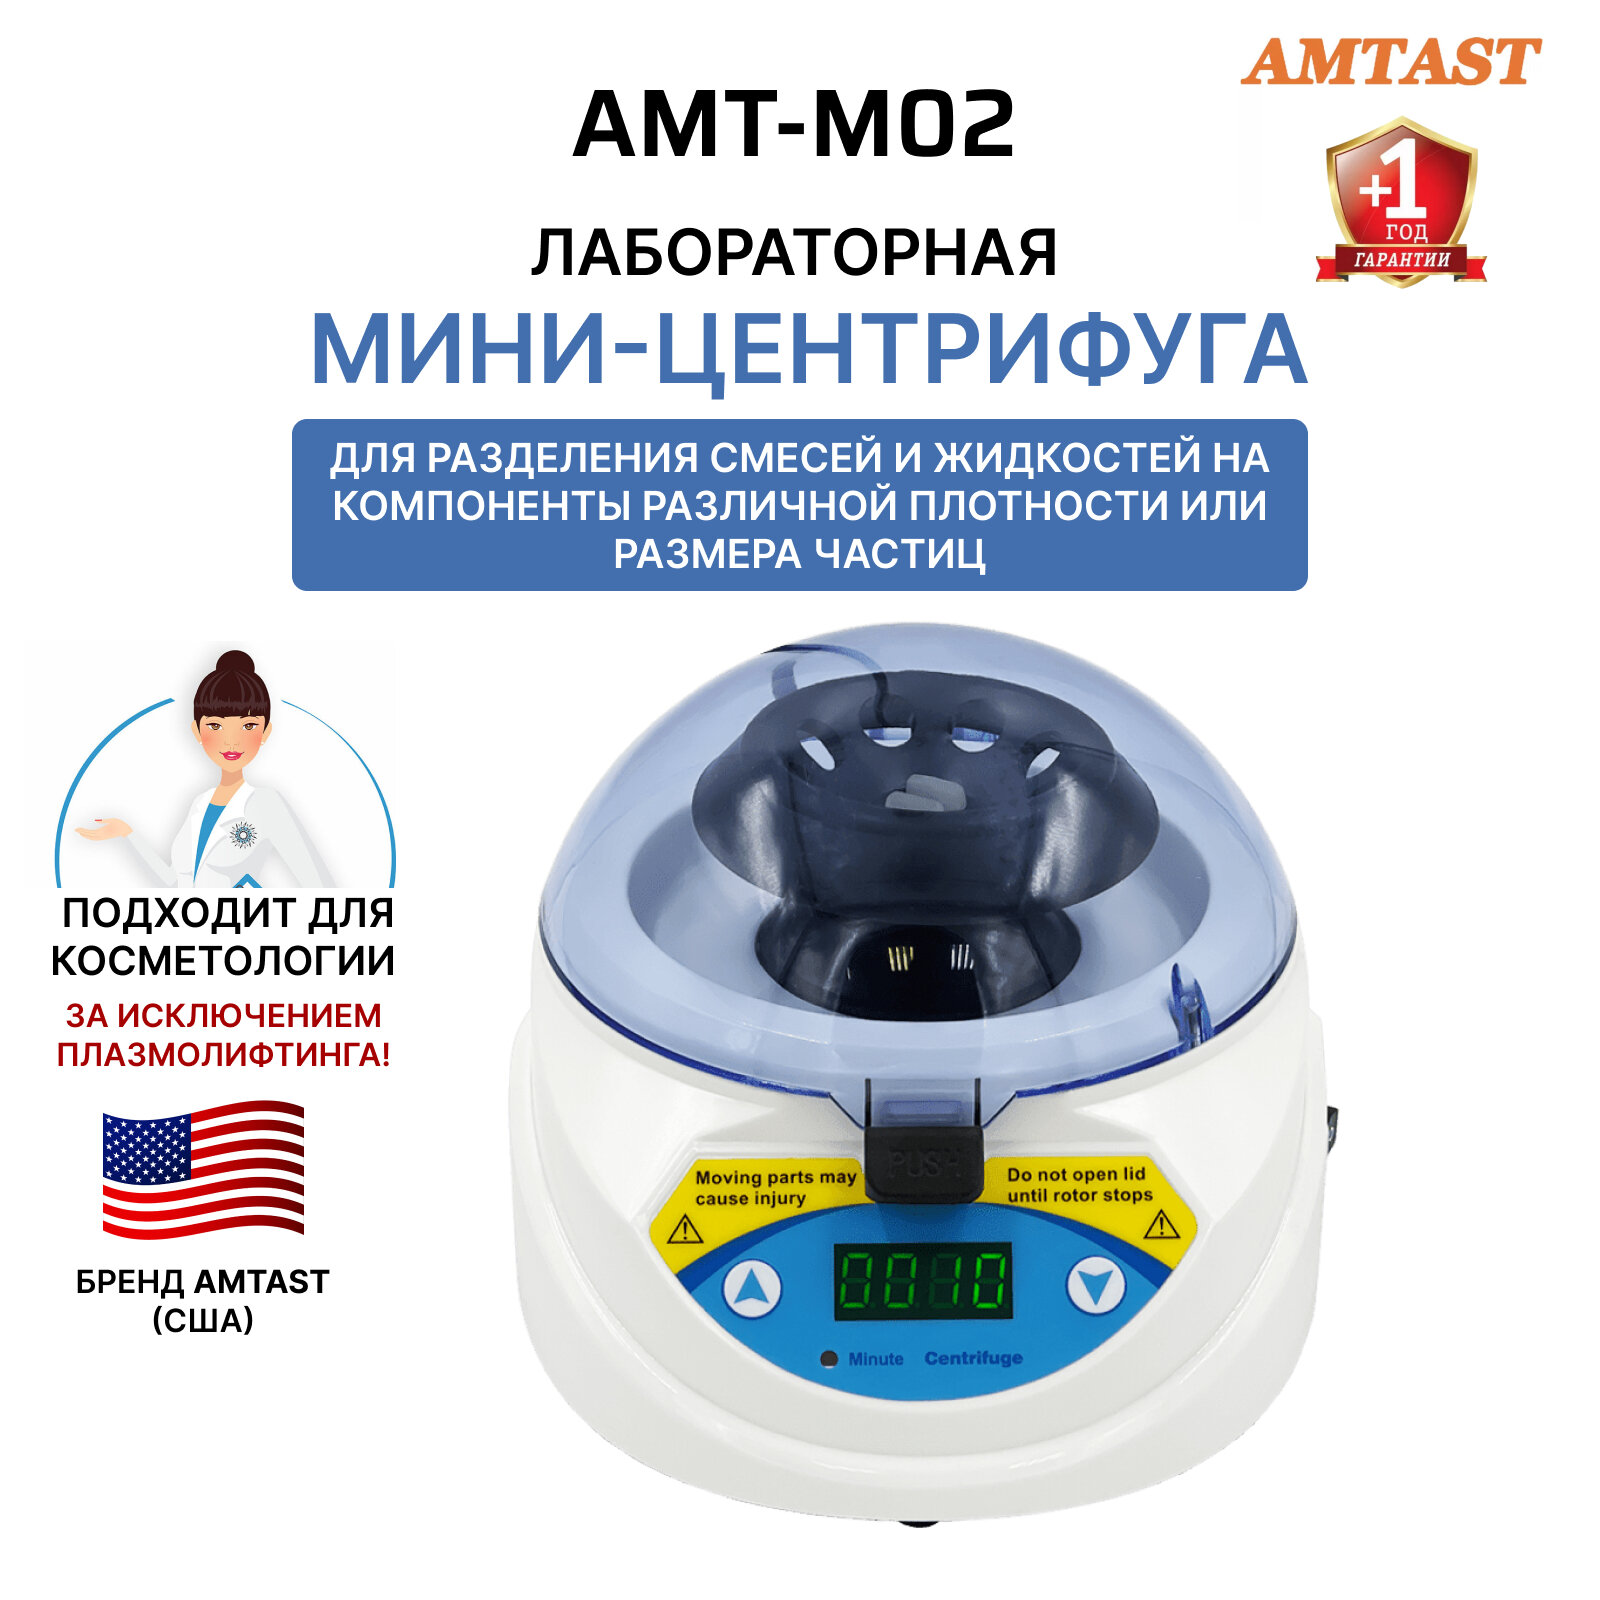 Высокоскоростная лабораторная мини-центрифуга AMT-M02